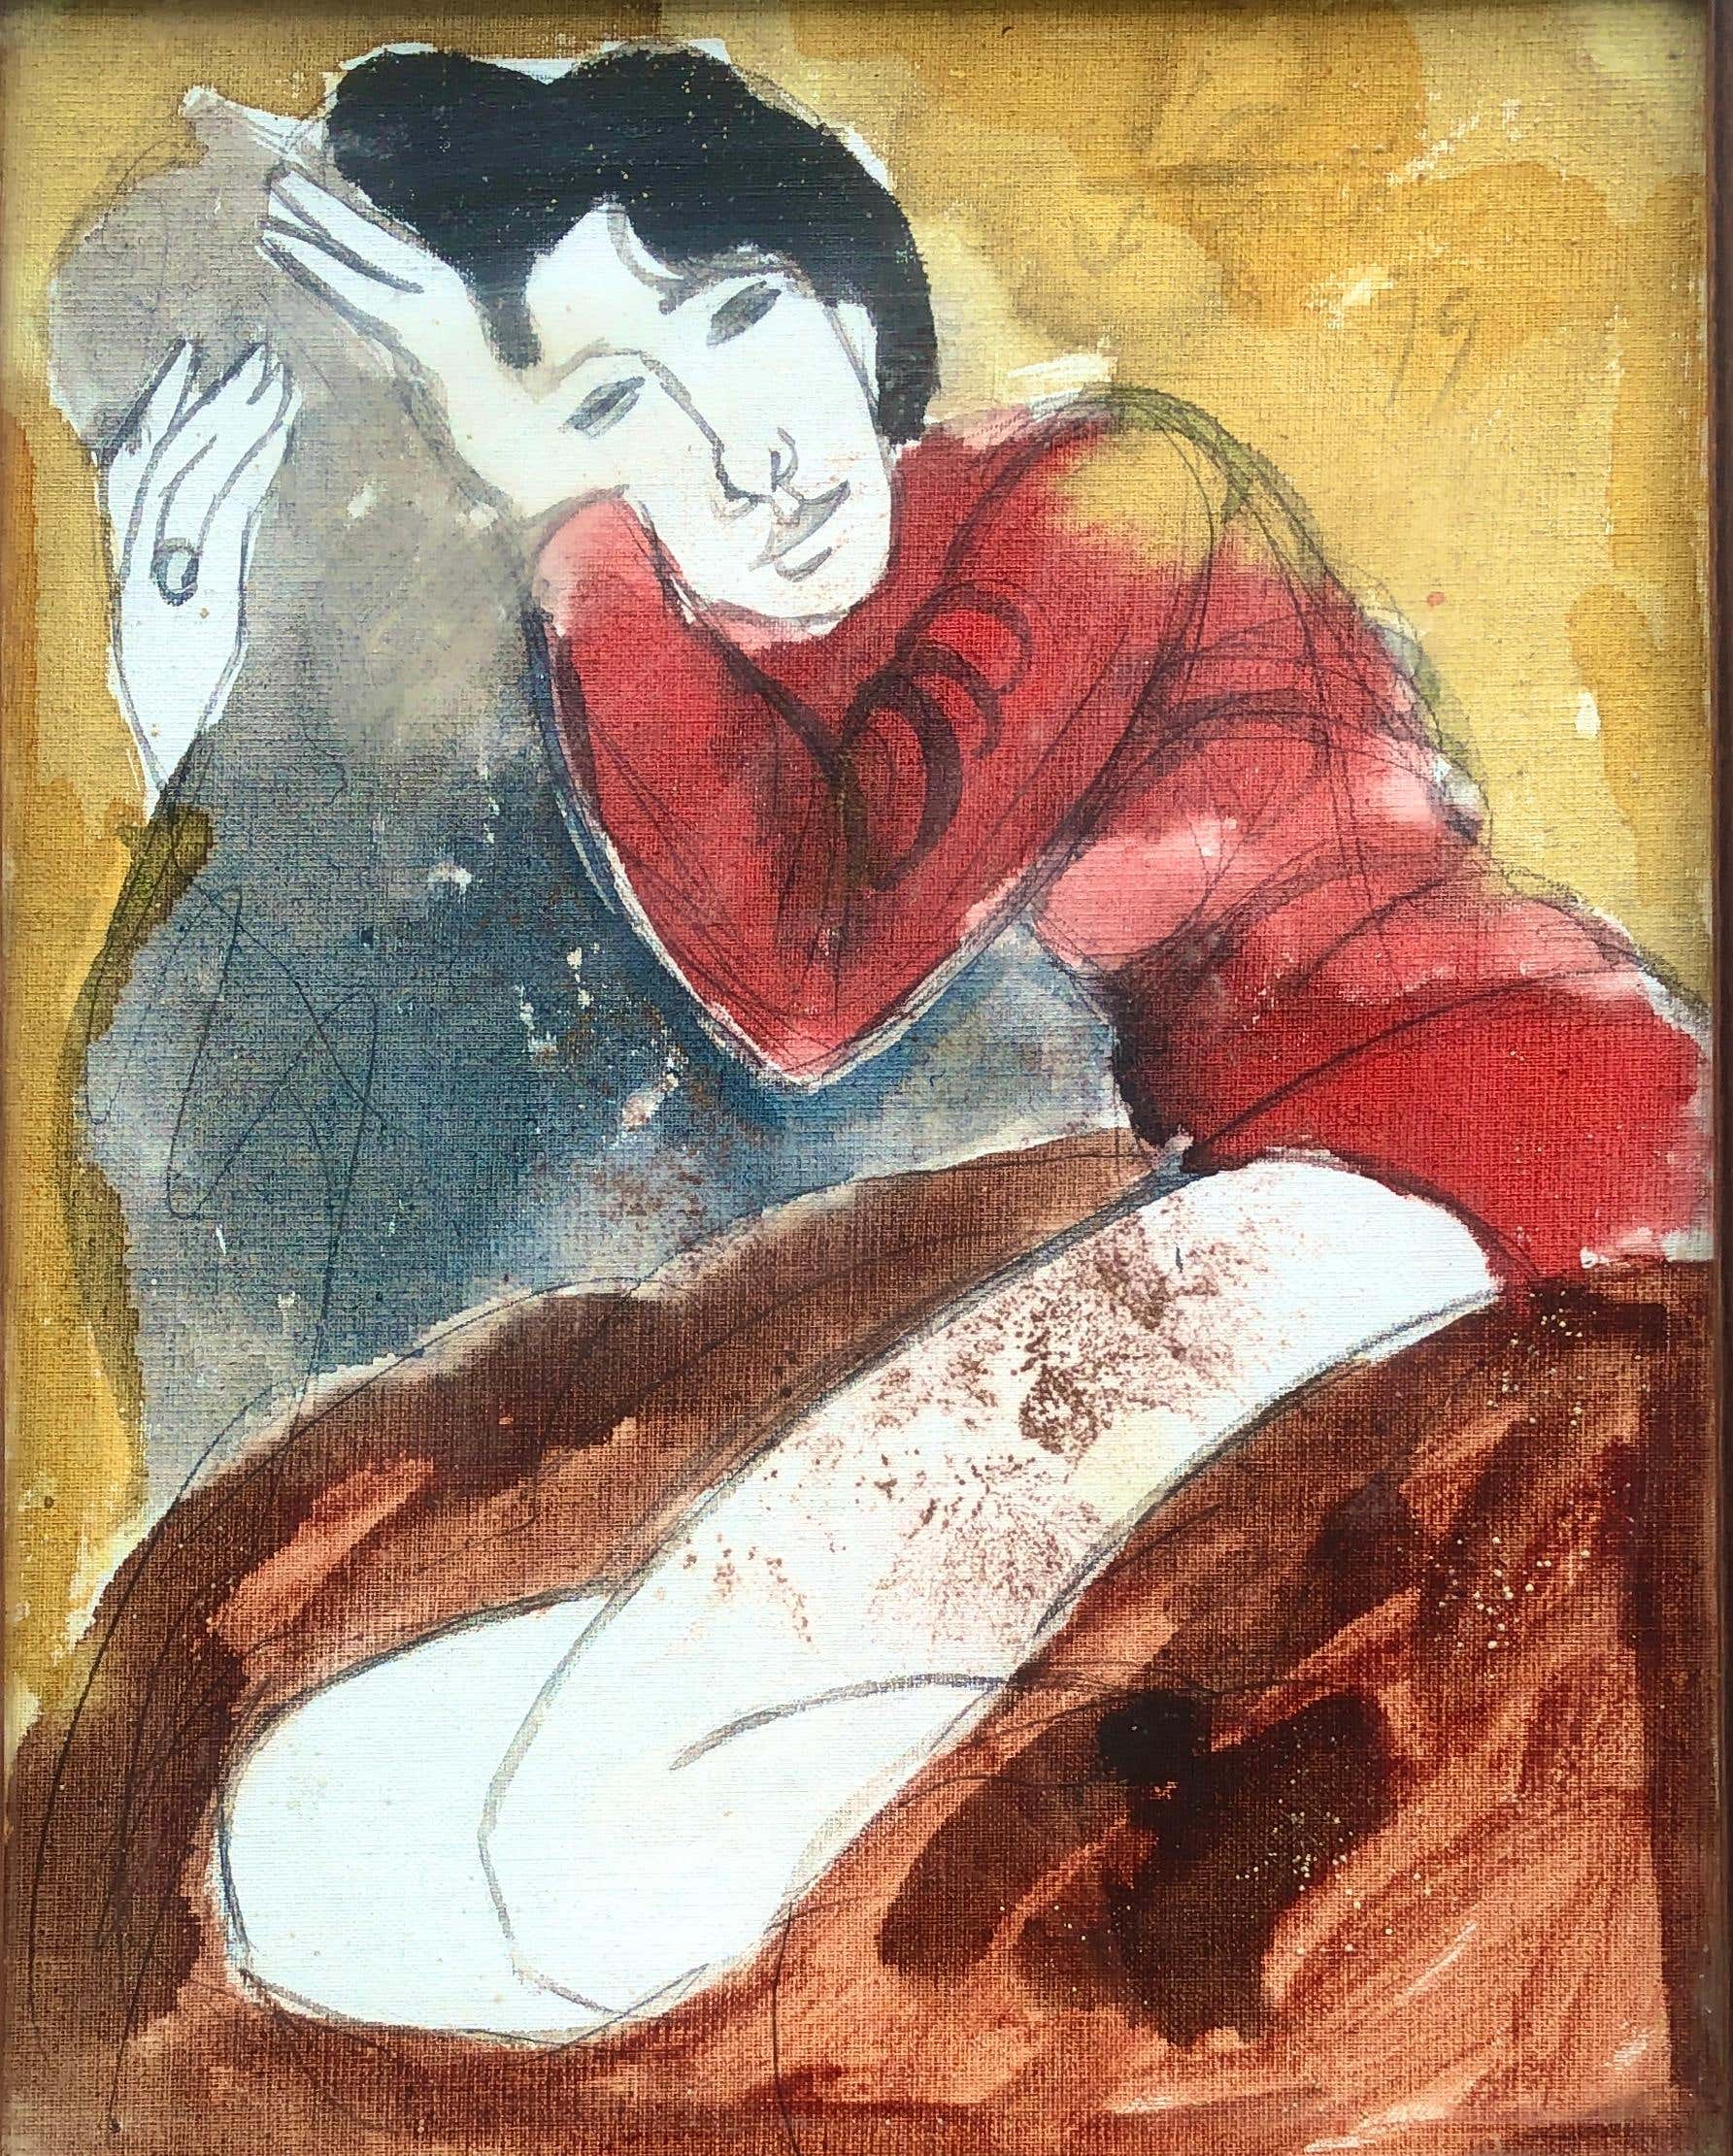 Femme posant peinture mixte